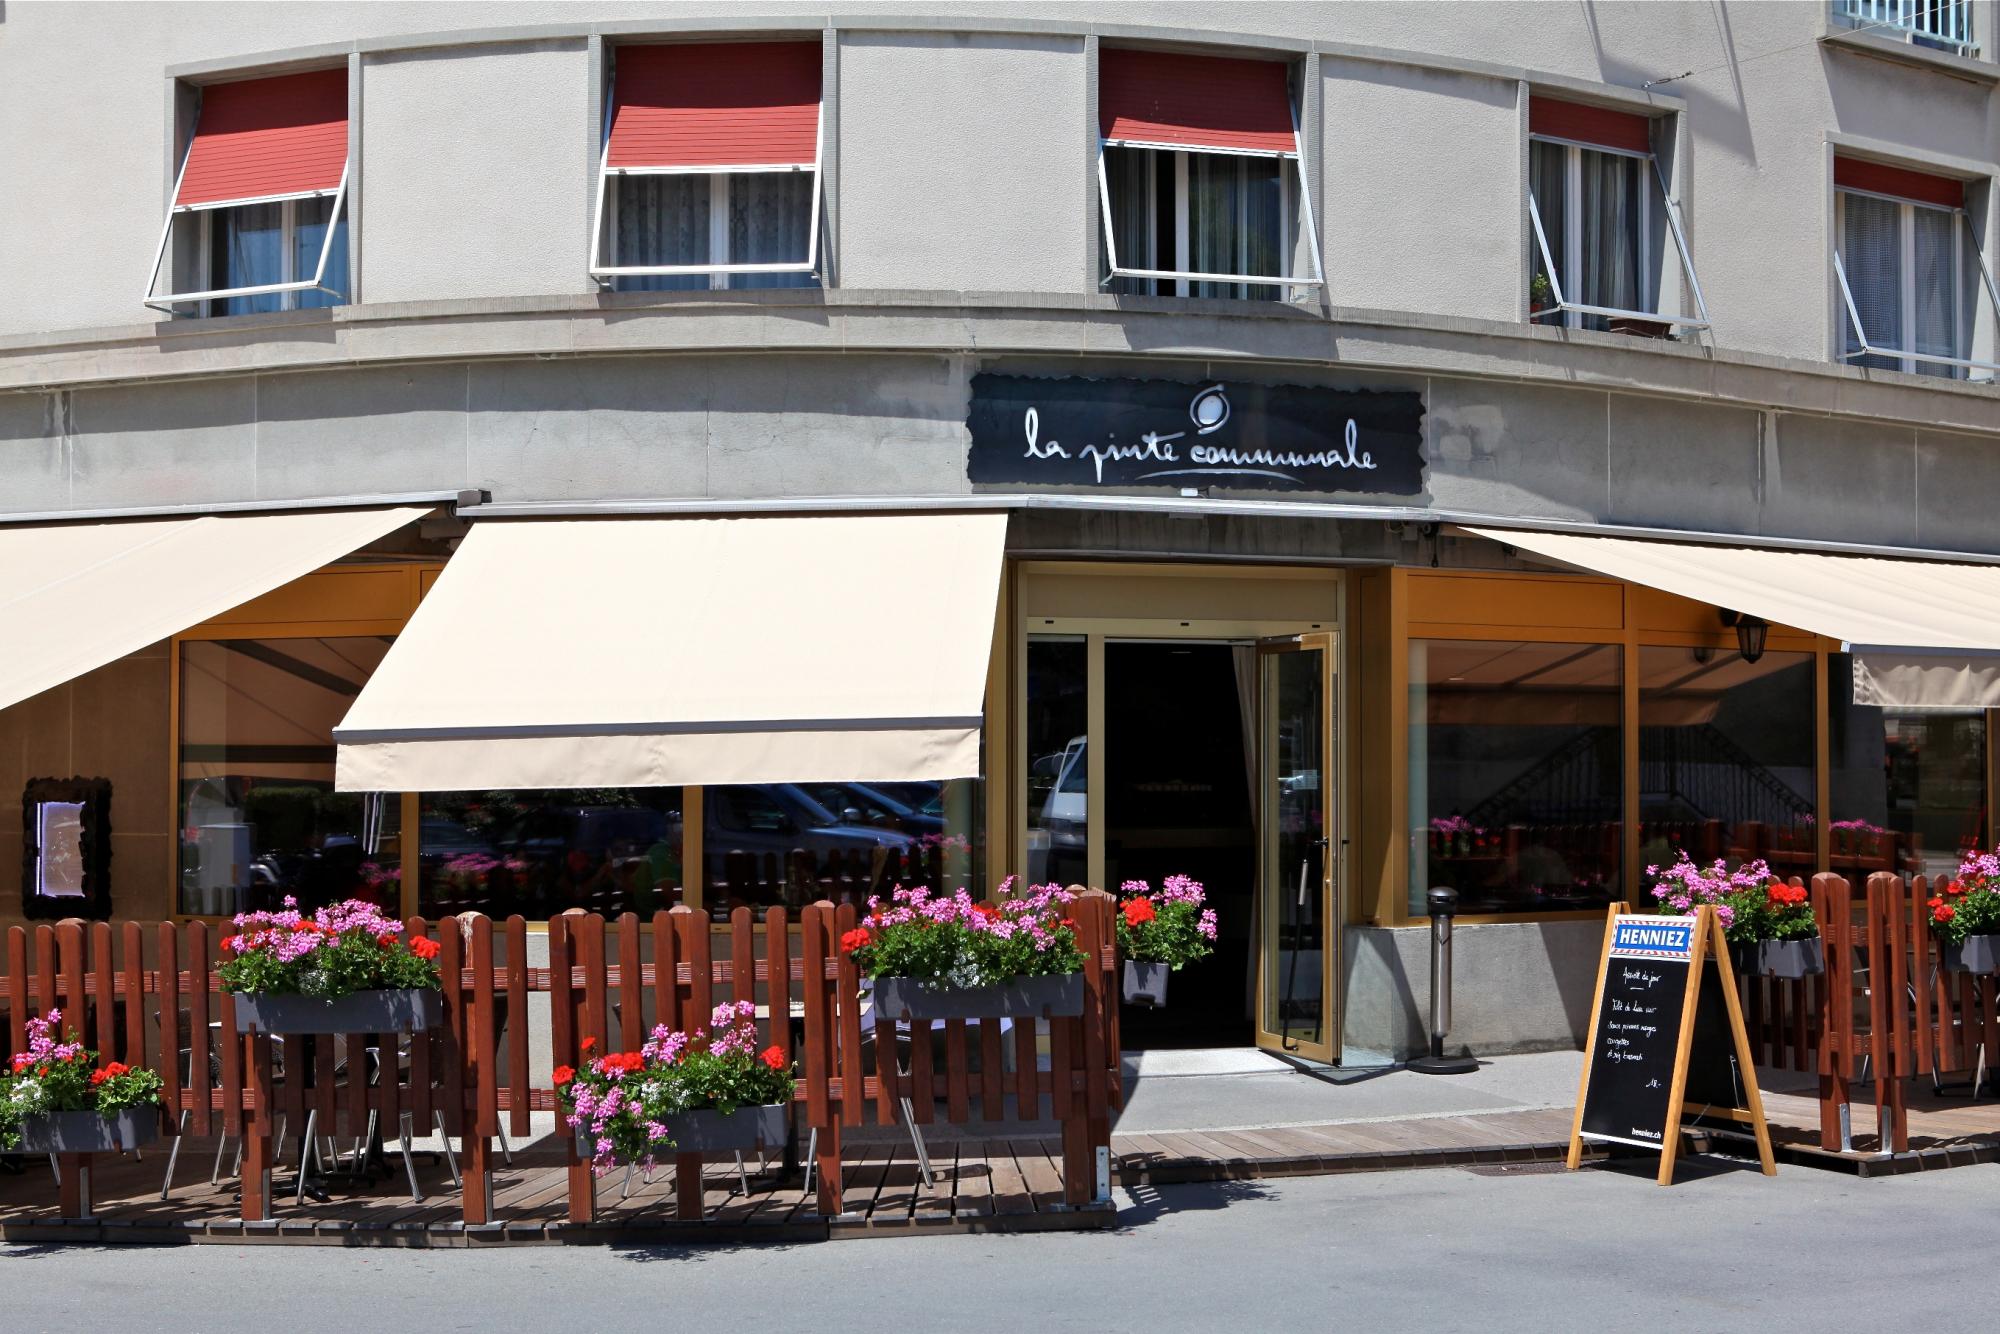 Restaurant La Pinte Communale - été - Aigle